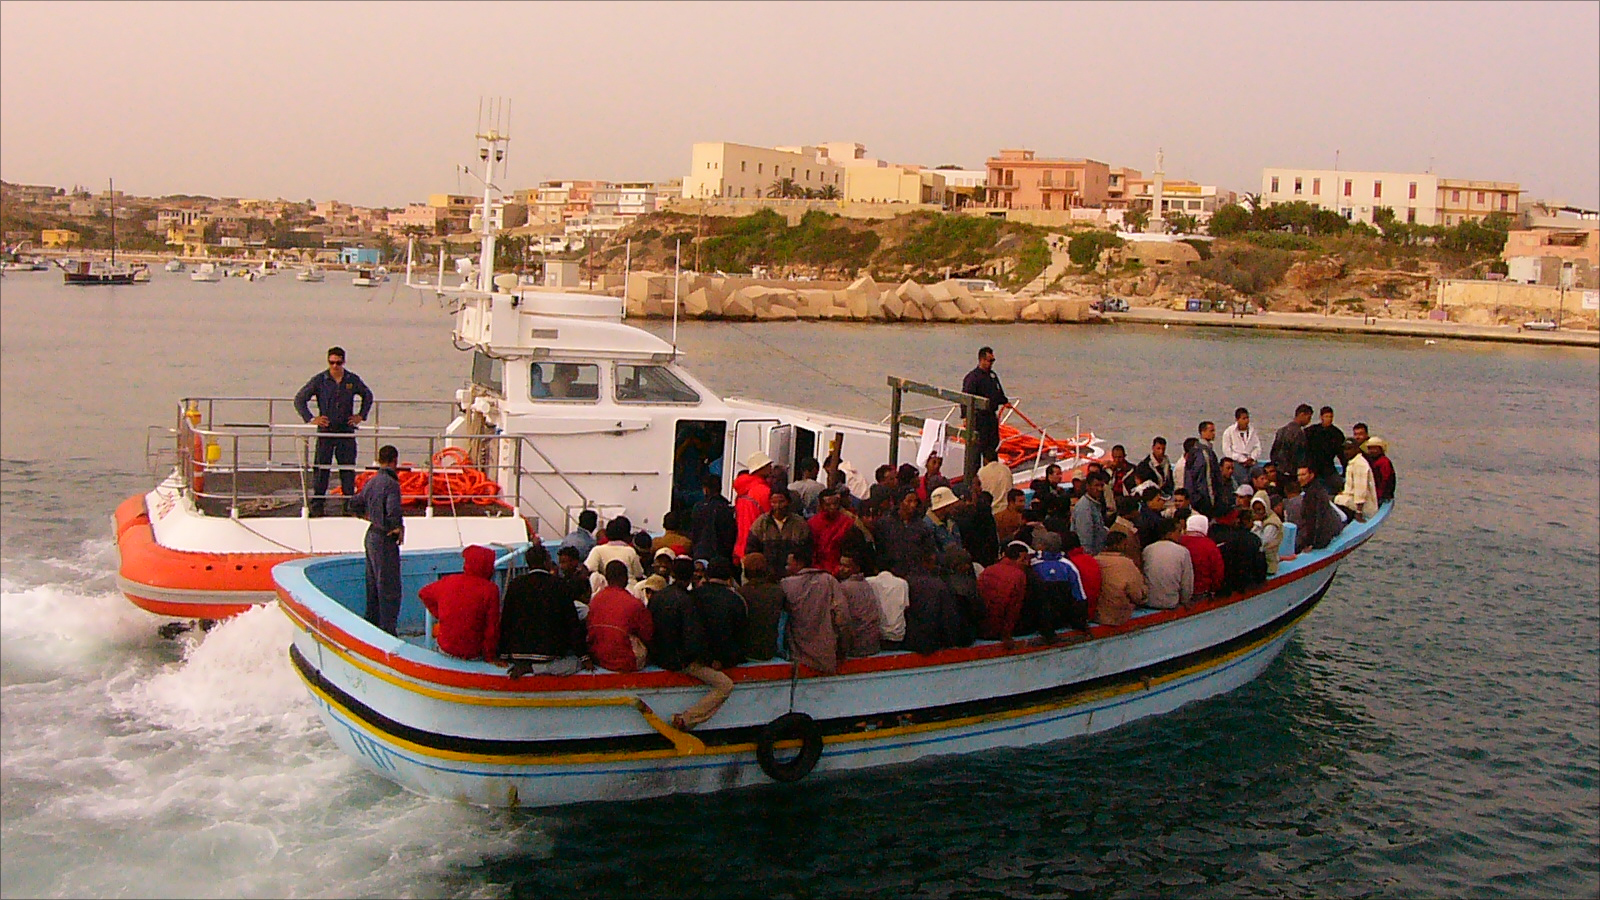 ‪قارب للاجئين عند دخوله جزيرة لامبيدوزا برفقة خفر السواحل الإيطالي (الجزيرة نت)‬ قارب للاجئين عند دخوله جزيرة لامبيدوزا برفقة خفر السواحل الإيطالي (الجزيرة نت)